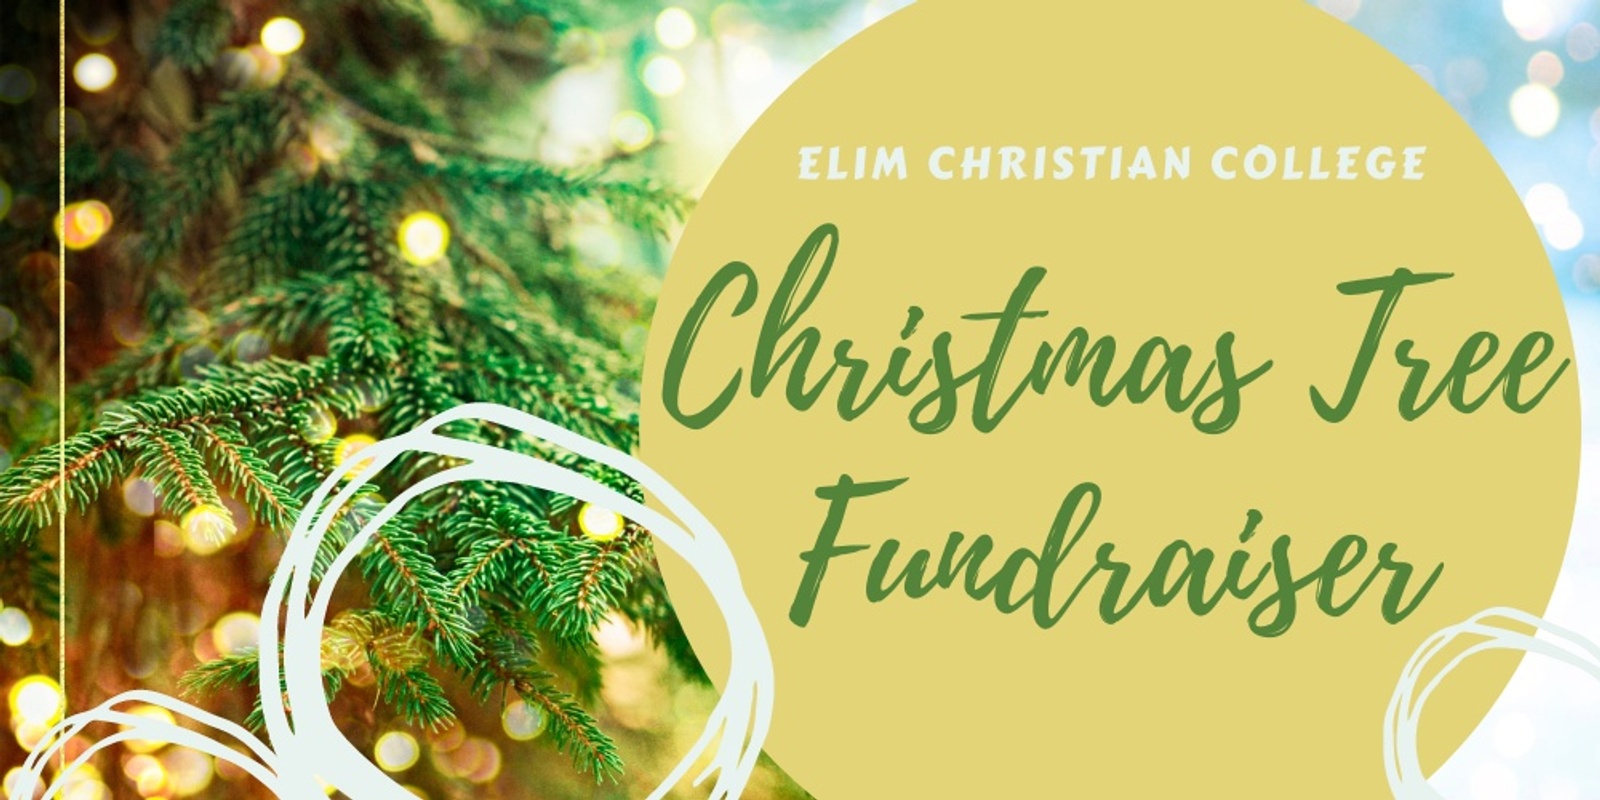 Banner image for Christmas Tree Fundraiser